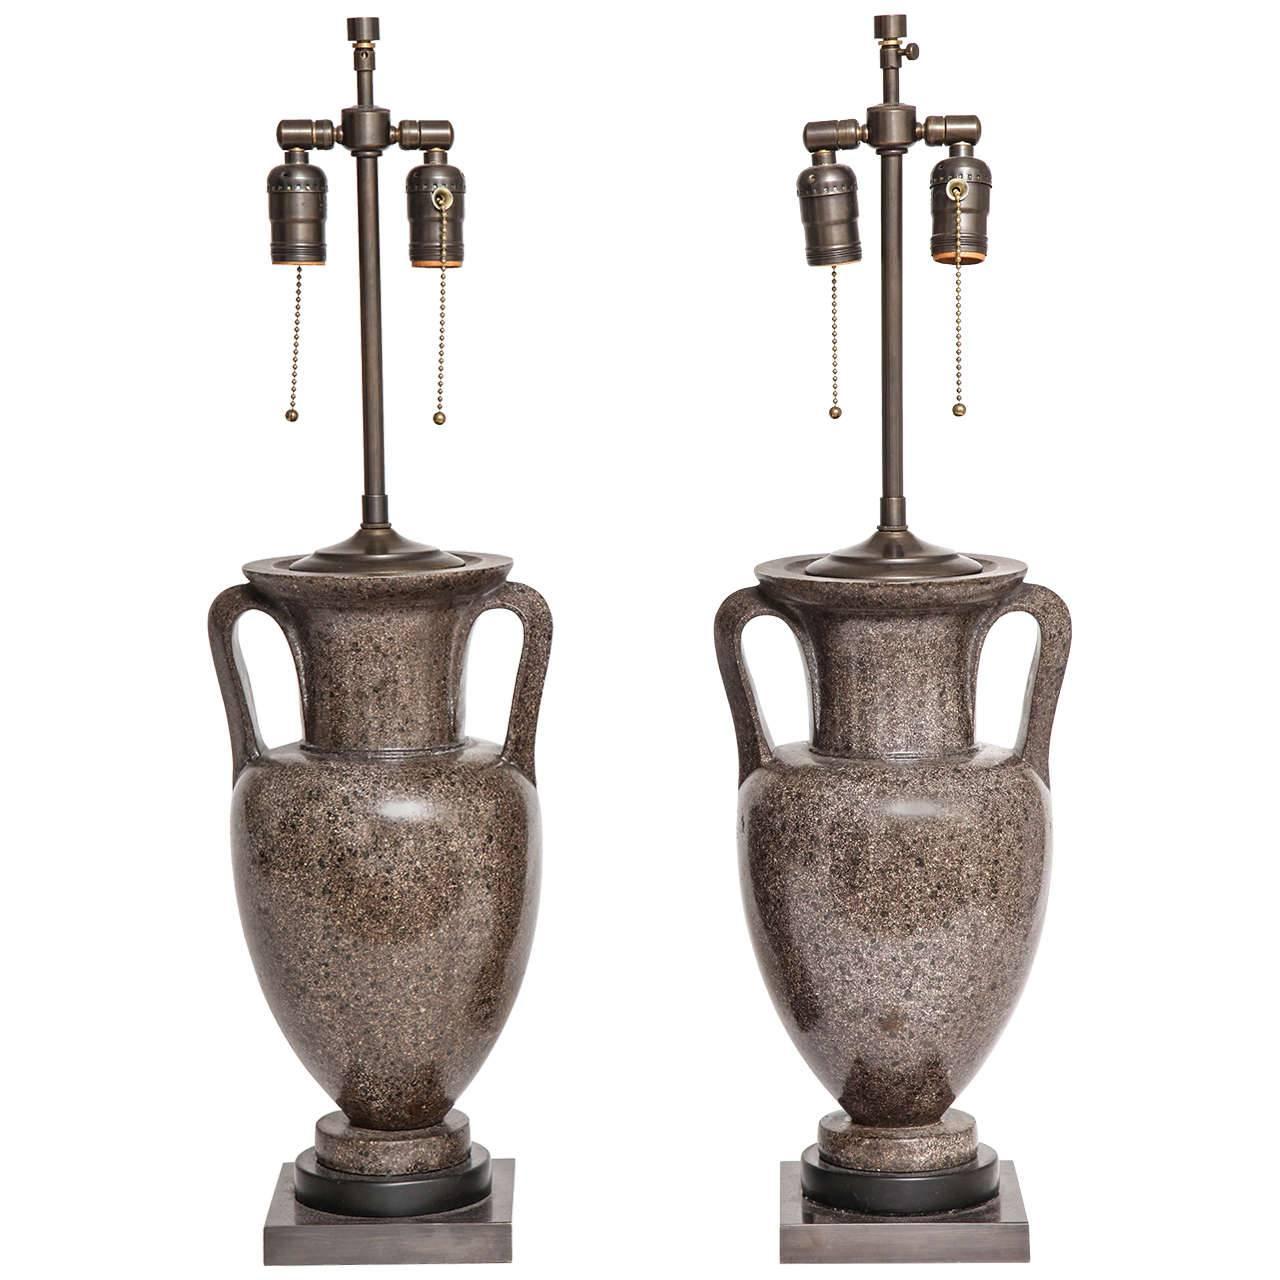 Paar italienische Grand Tour-Porphyr-Urnen in Lampen umgewandelt, frühe 1800er Jahre